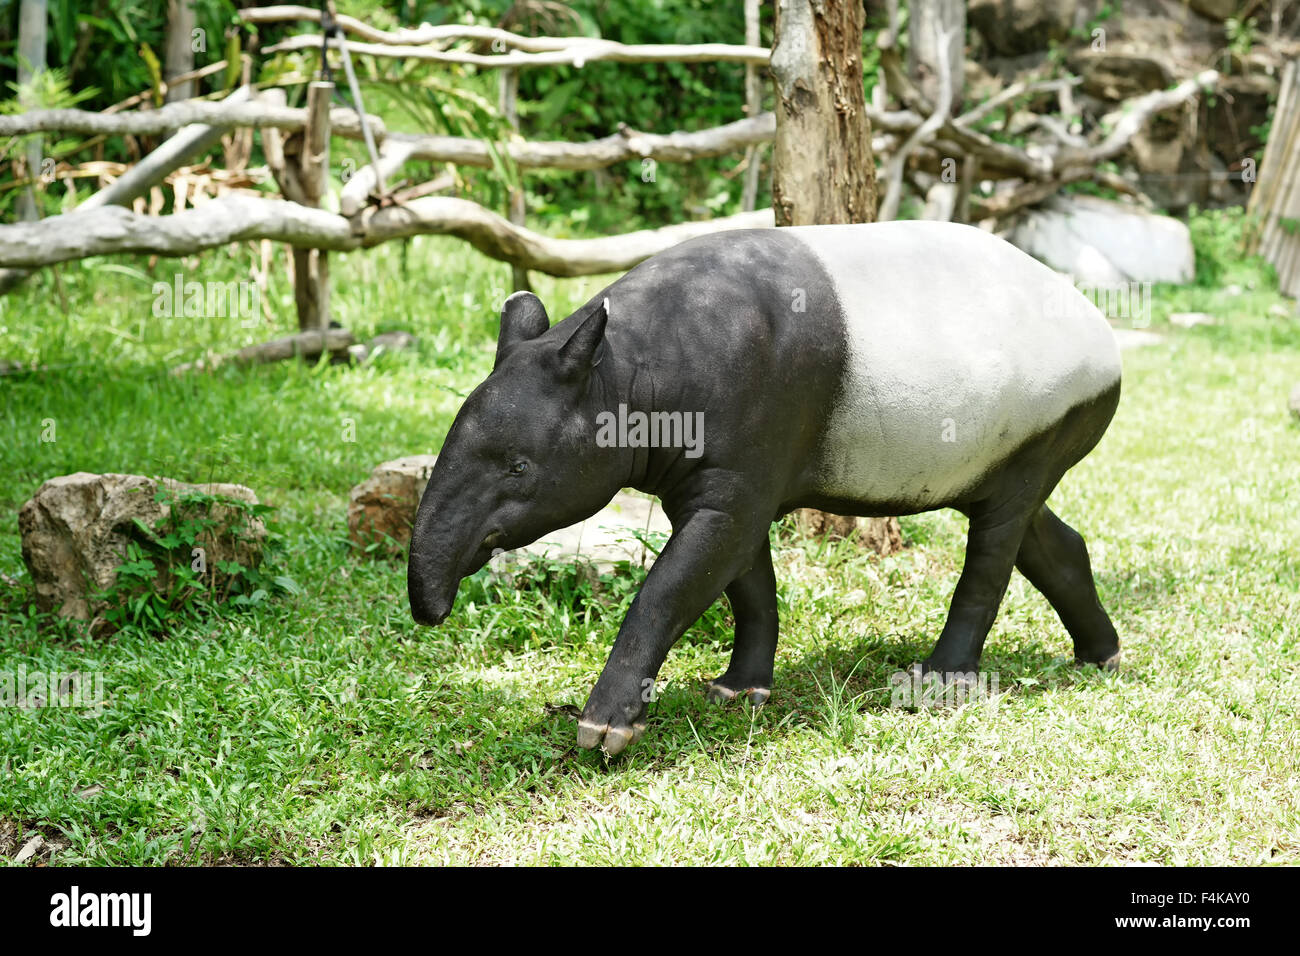 malayan tapir in the zoo Stock Photo